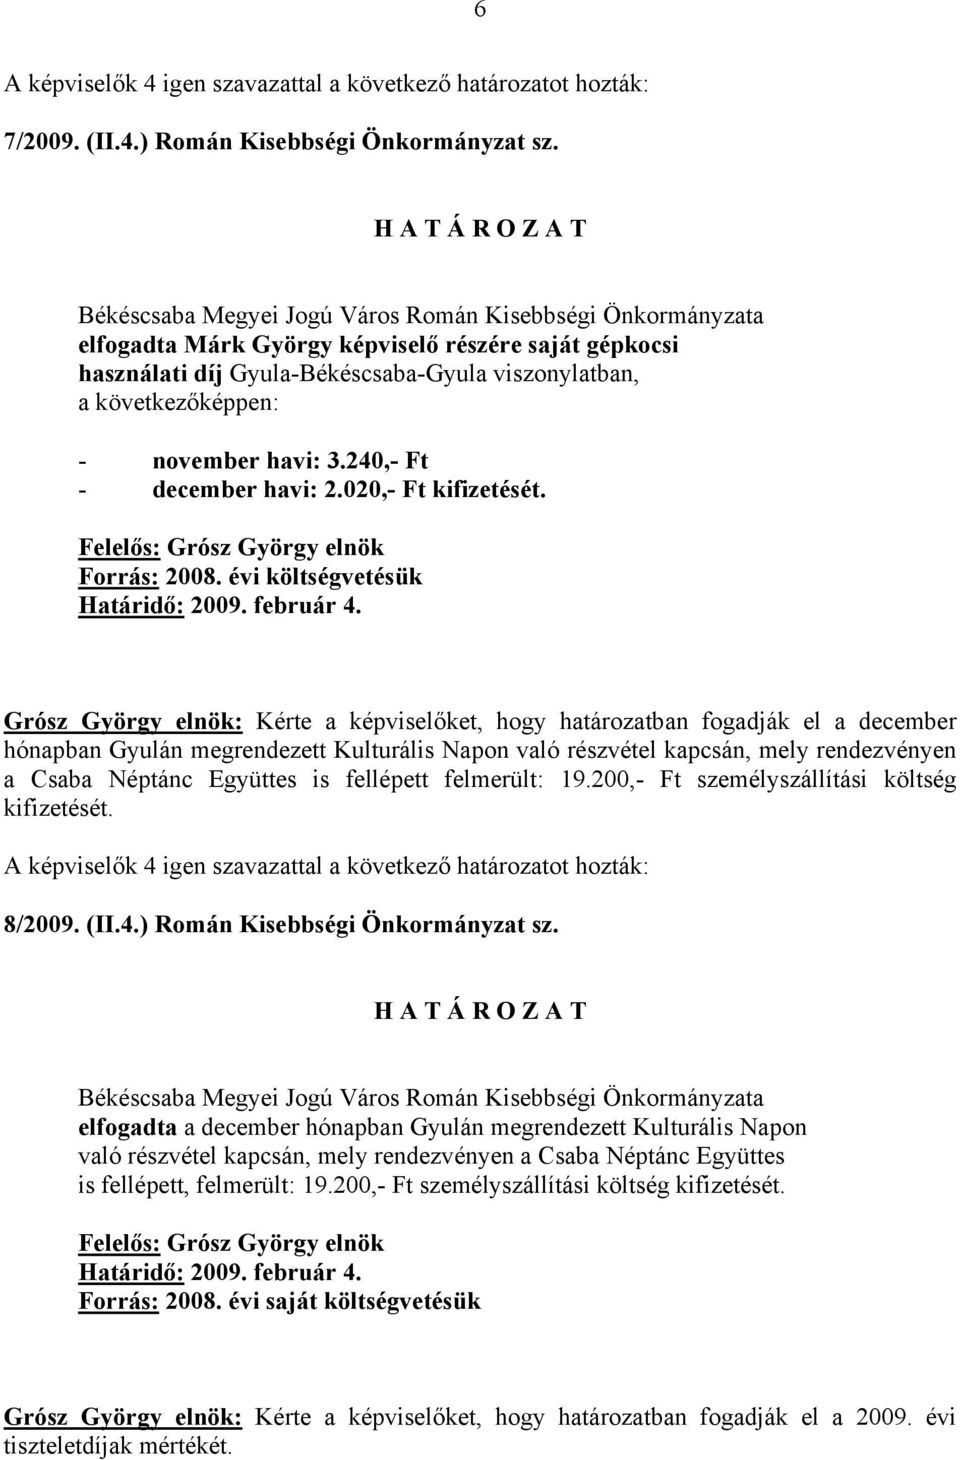 évi költségvetésük Grósz György elnök: Kérte a képviselőket, hogy határozatban fogadják el a december hónapban Gyulán megrendezett Kulturális Napon való részvétel kapcsán, mely rendezvényen a Csaba